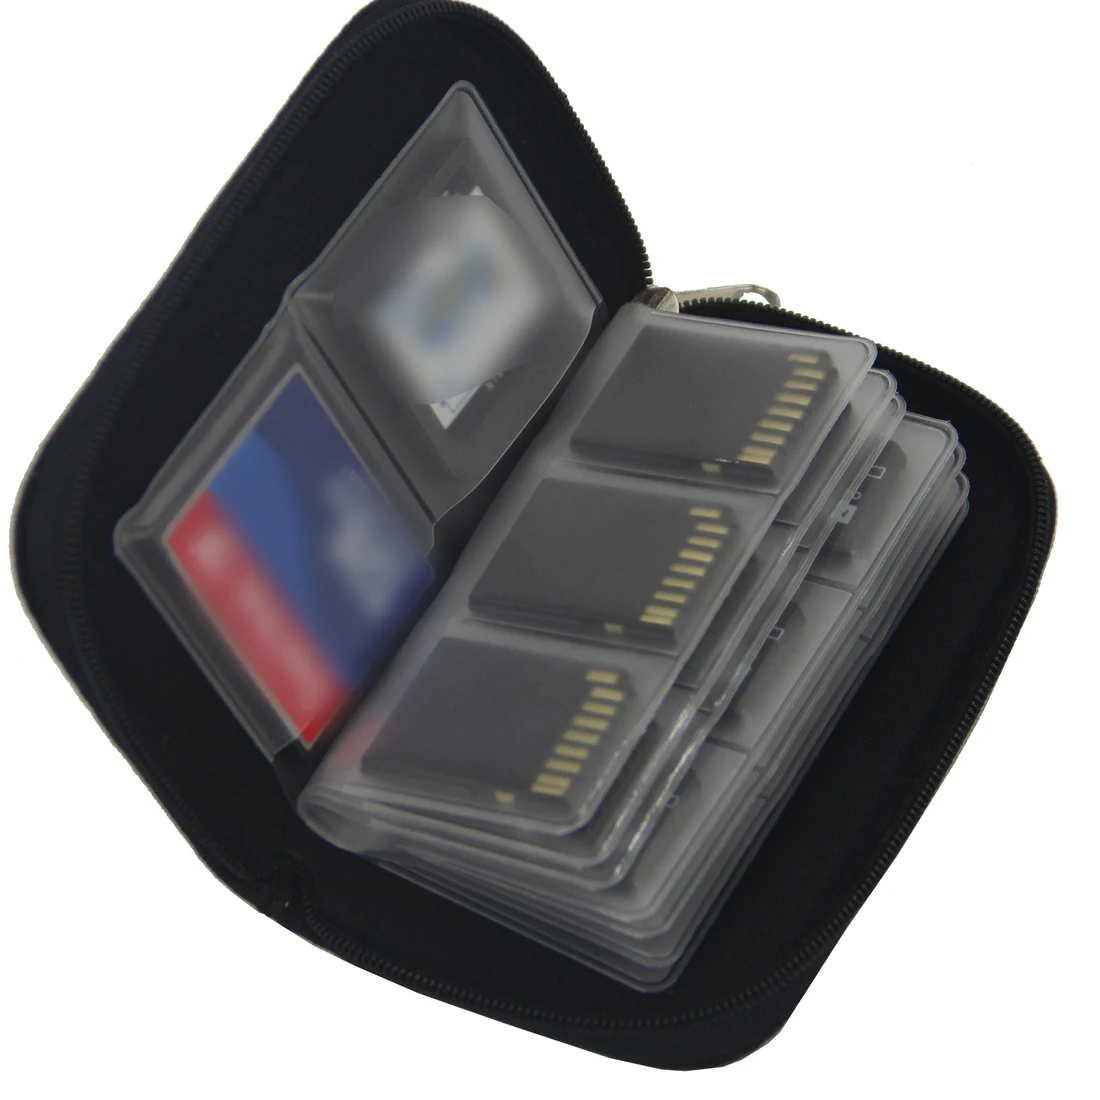 NOYOKERE брендовый чехол для хранения карт памяти держатель кошелек 18 слотов+ 4 слота для CF/SD/SDHC/MS/DS 3DS аксессуары для игр